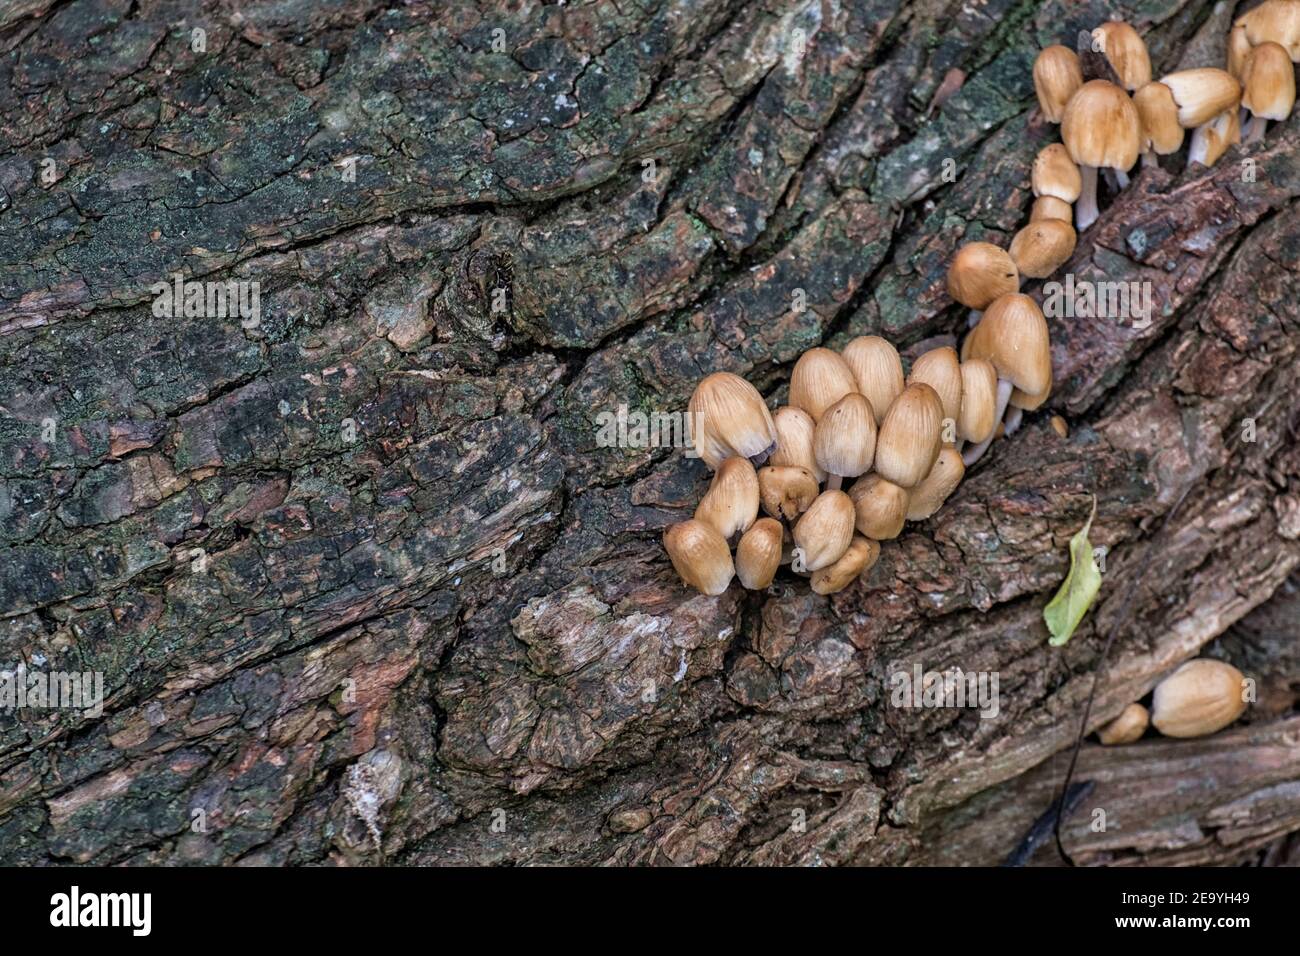 Colonie de champignons de mica cap sur l'écorce d'un Arbre (Coprinellus micaceus) Banque D'Images